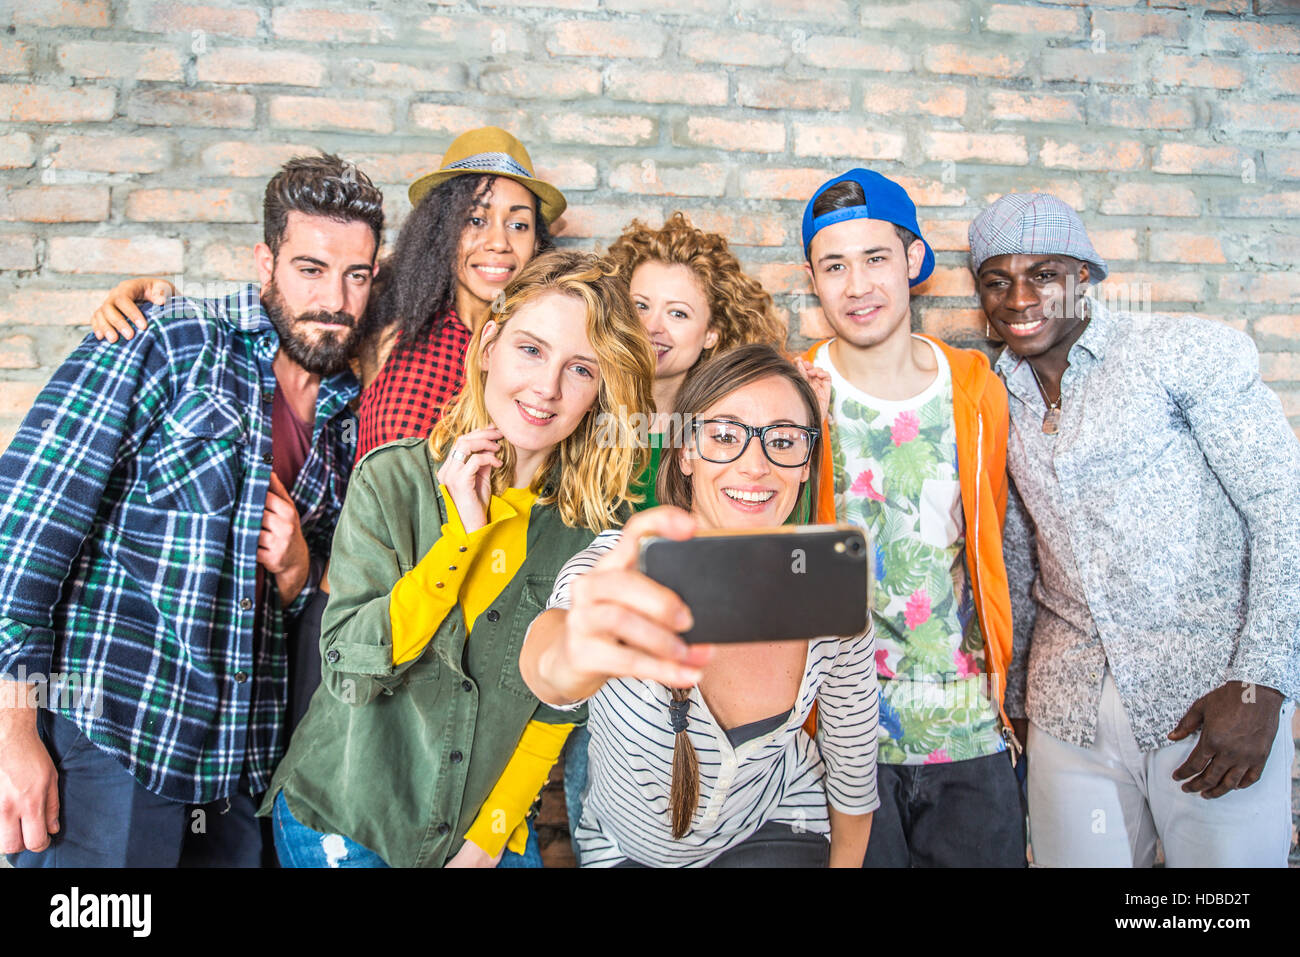 Gruppe von Menschen mit Coloroful trendige Klamotten zusammen kleben und  Spaß - junge fröhliche Freunde nehmen eine selfie Stockfotografie - Alamy